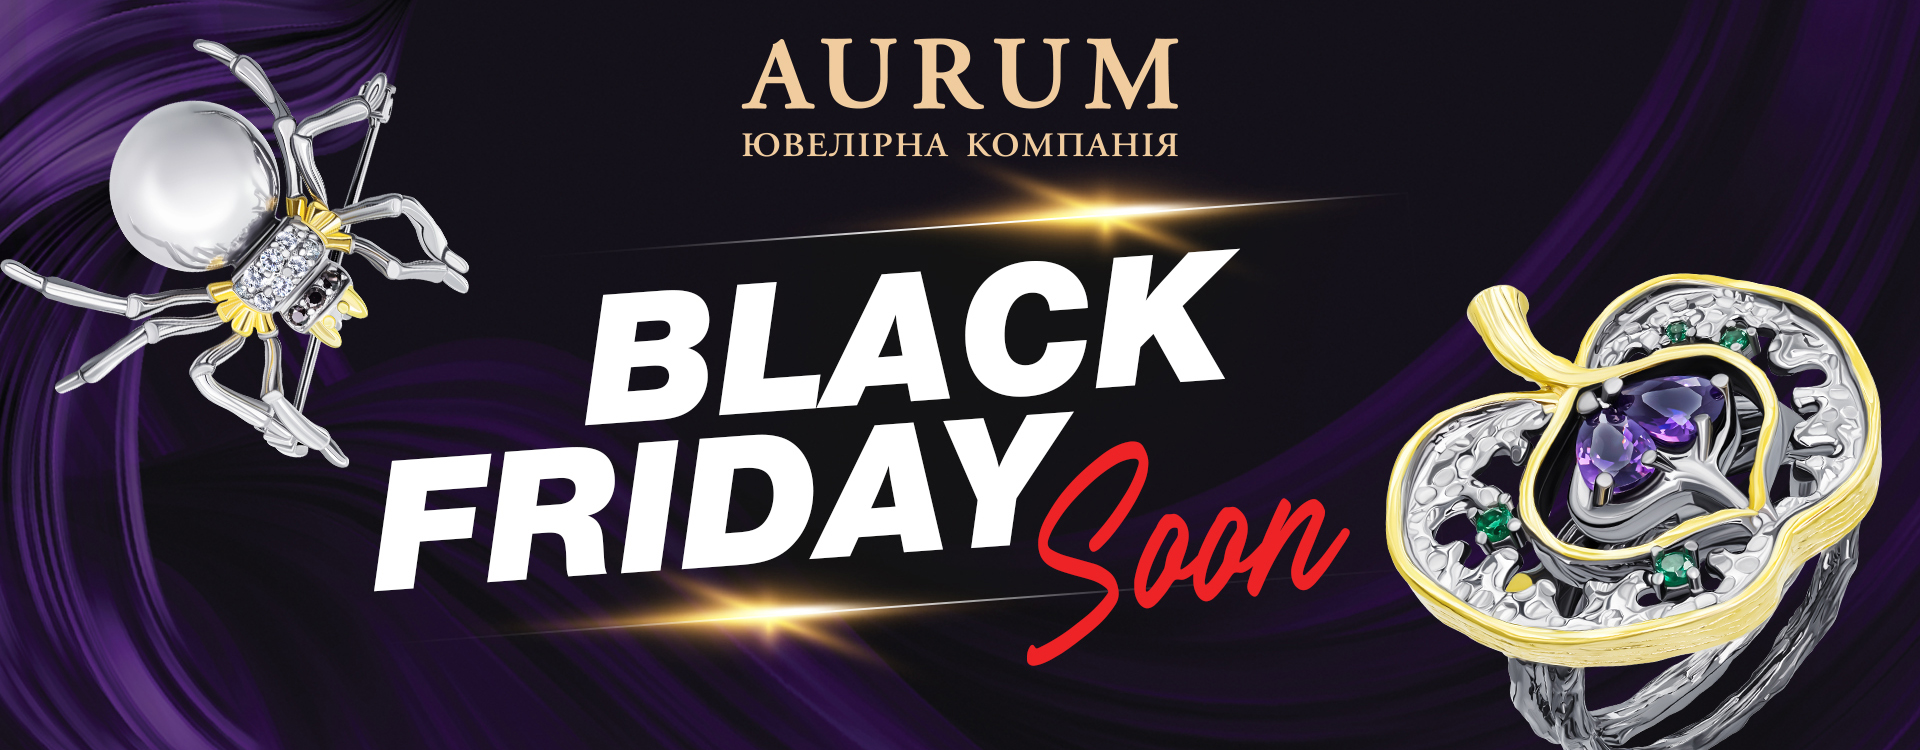 Black Friday soon in 
AURUM